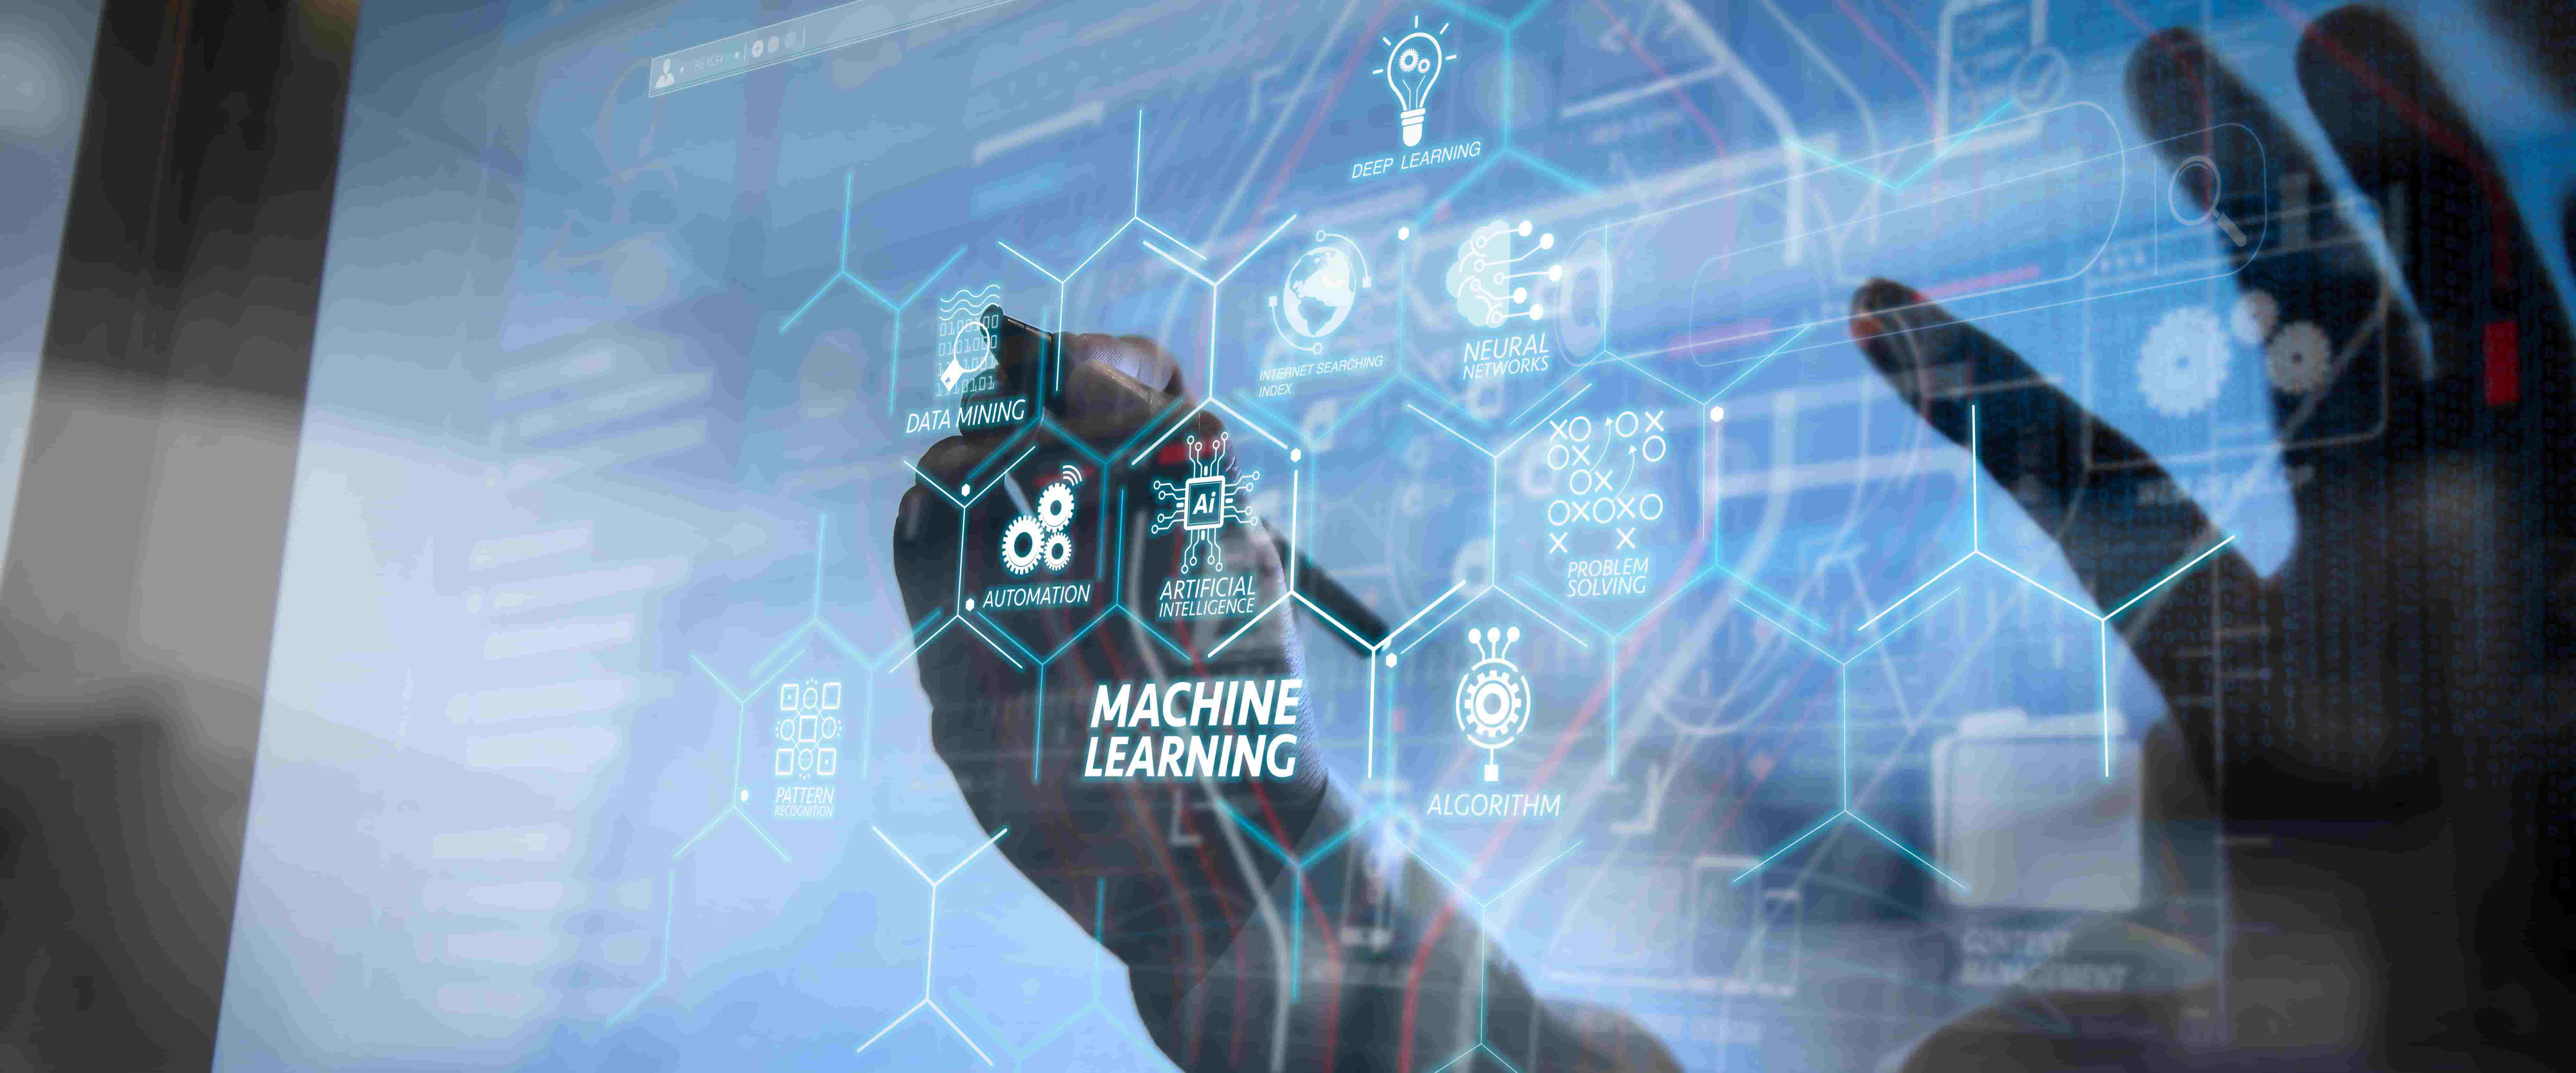 图片展示了一只手在触摸充满图标和英文术语的透明屏幕，中心写着“机器学习”，体现了高科技和人工智能的概念。